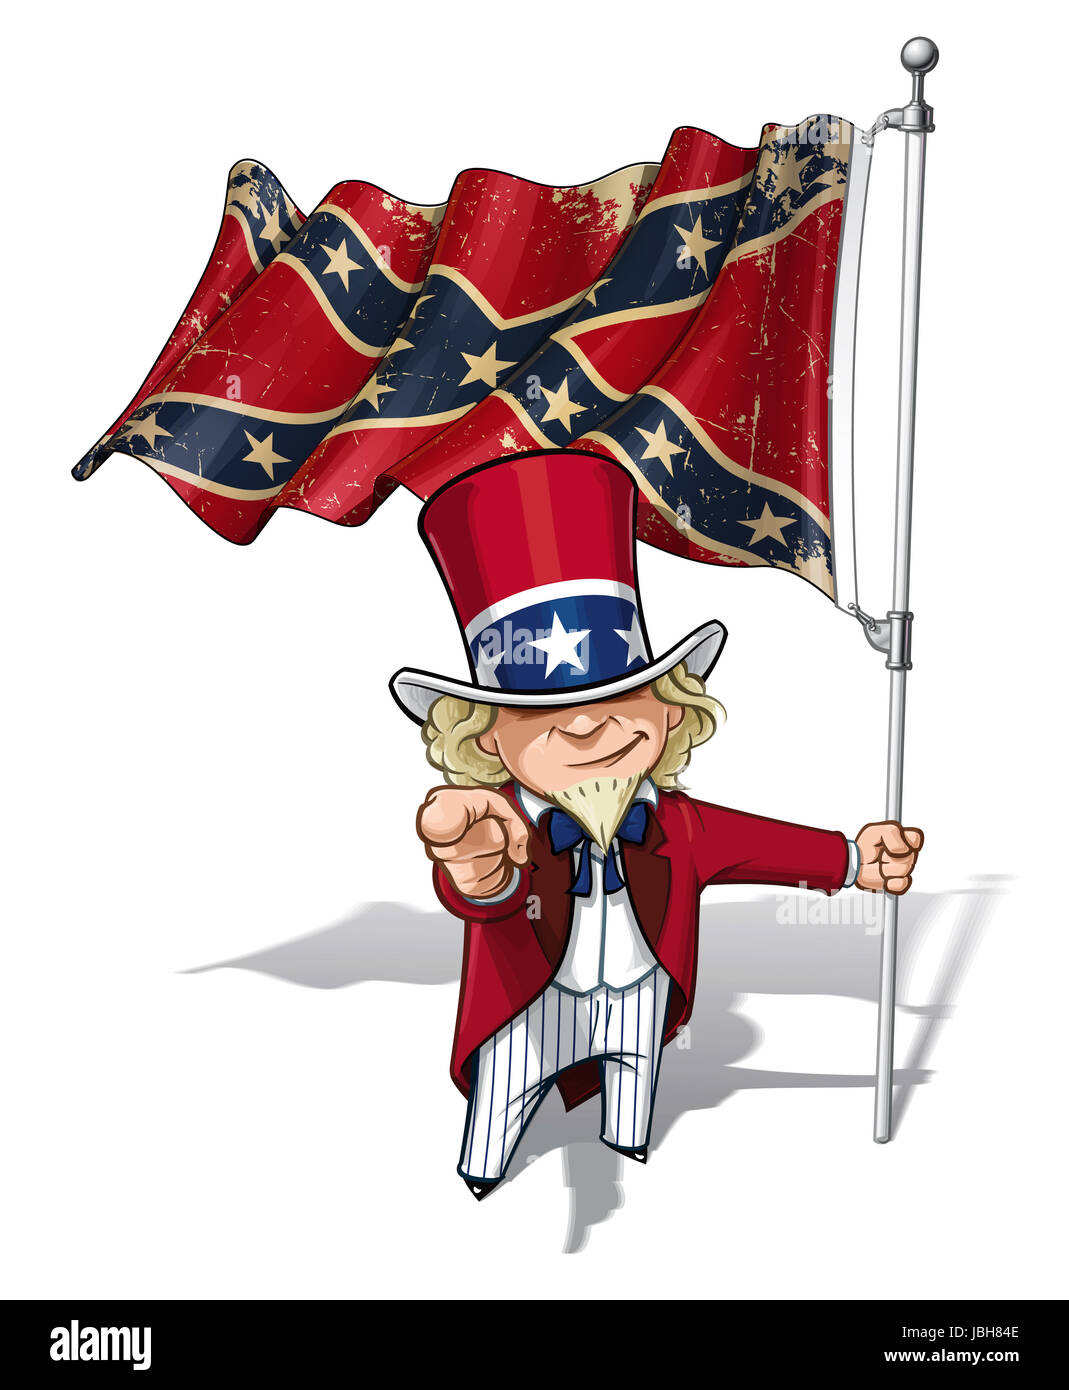 Vector Cartoon Illustration von Süden Uncle Sam hält ein winken ein American civil war Süden Flagge (Stars And Bars), zeigen, "Ich will dich". Flagge von Textur und Farbe Sepia können entfernt werden, durch die jeweiligen Layer deaktivieren. Stockfoto